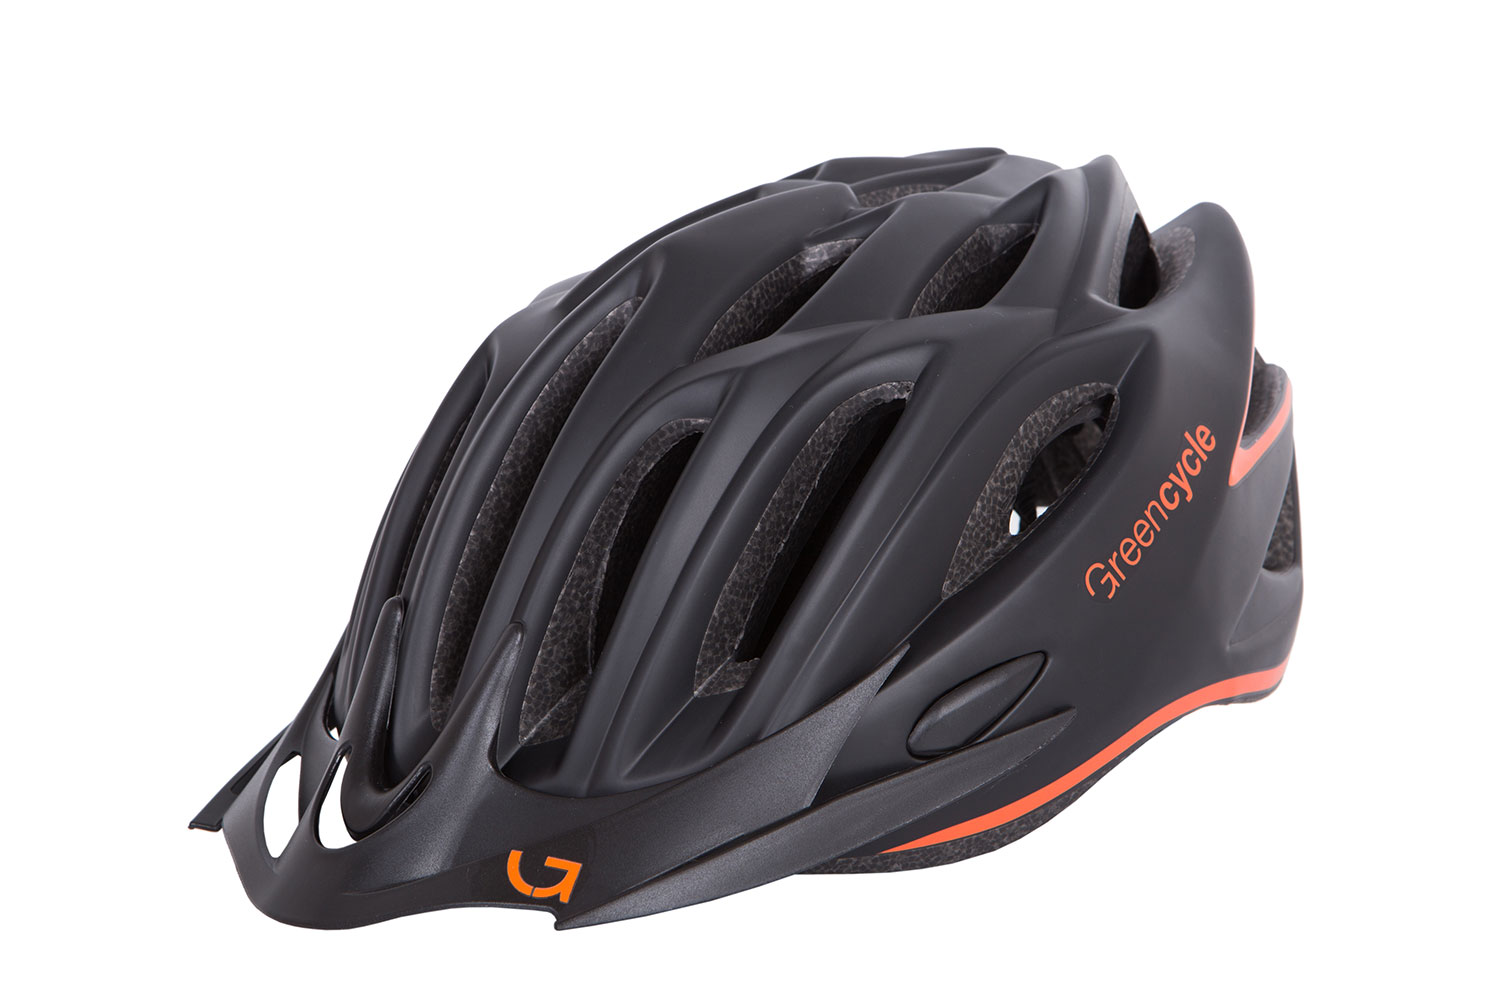 Шлем Green Cycle New Rock размер 54-58см черно-оранжевый матовый